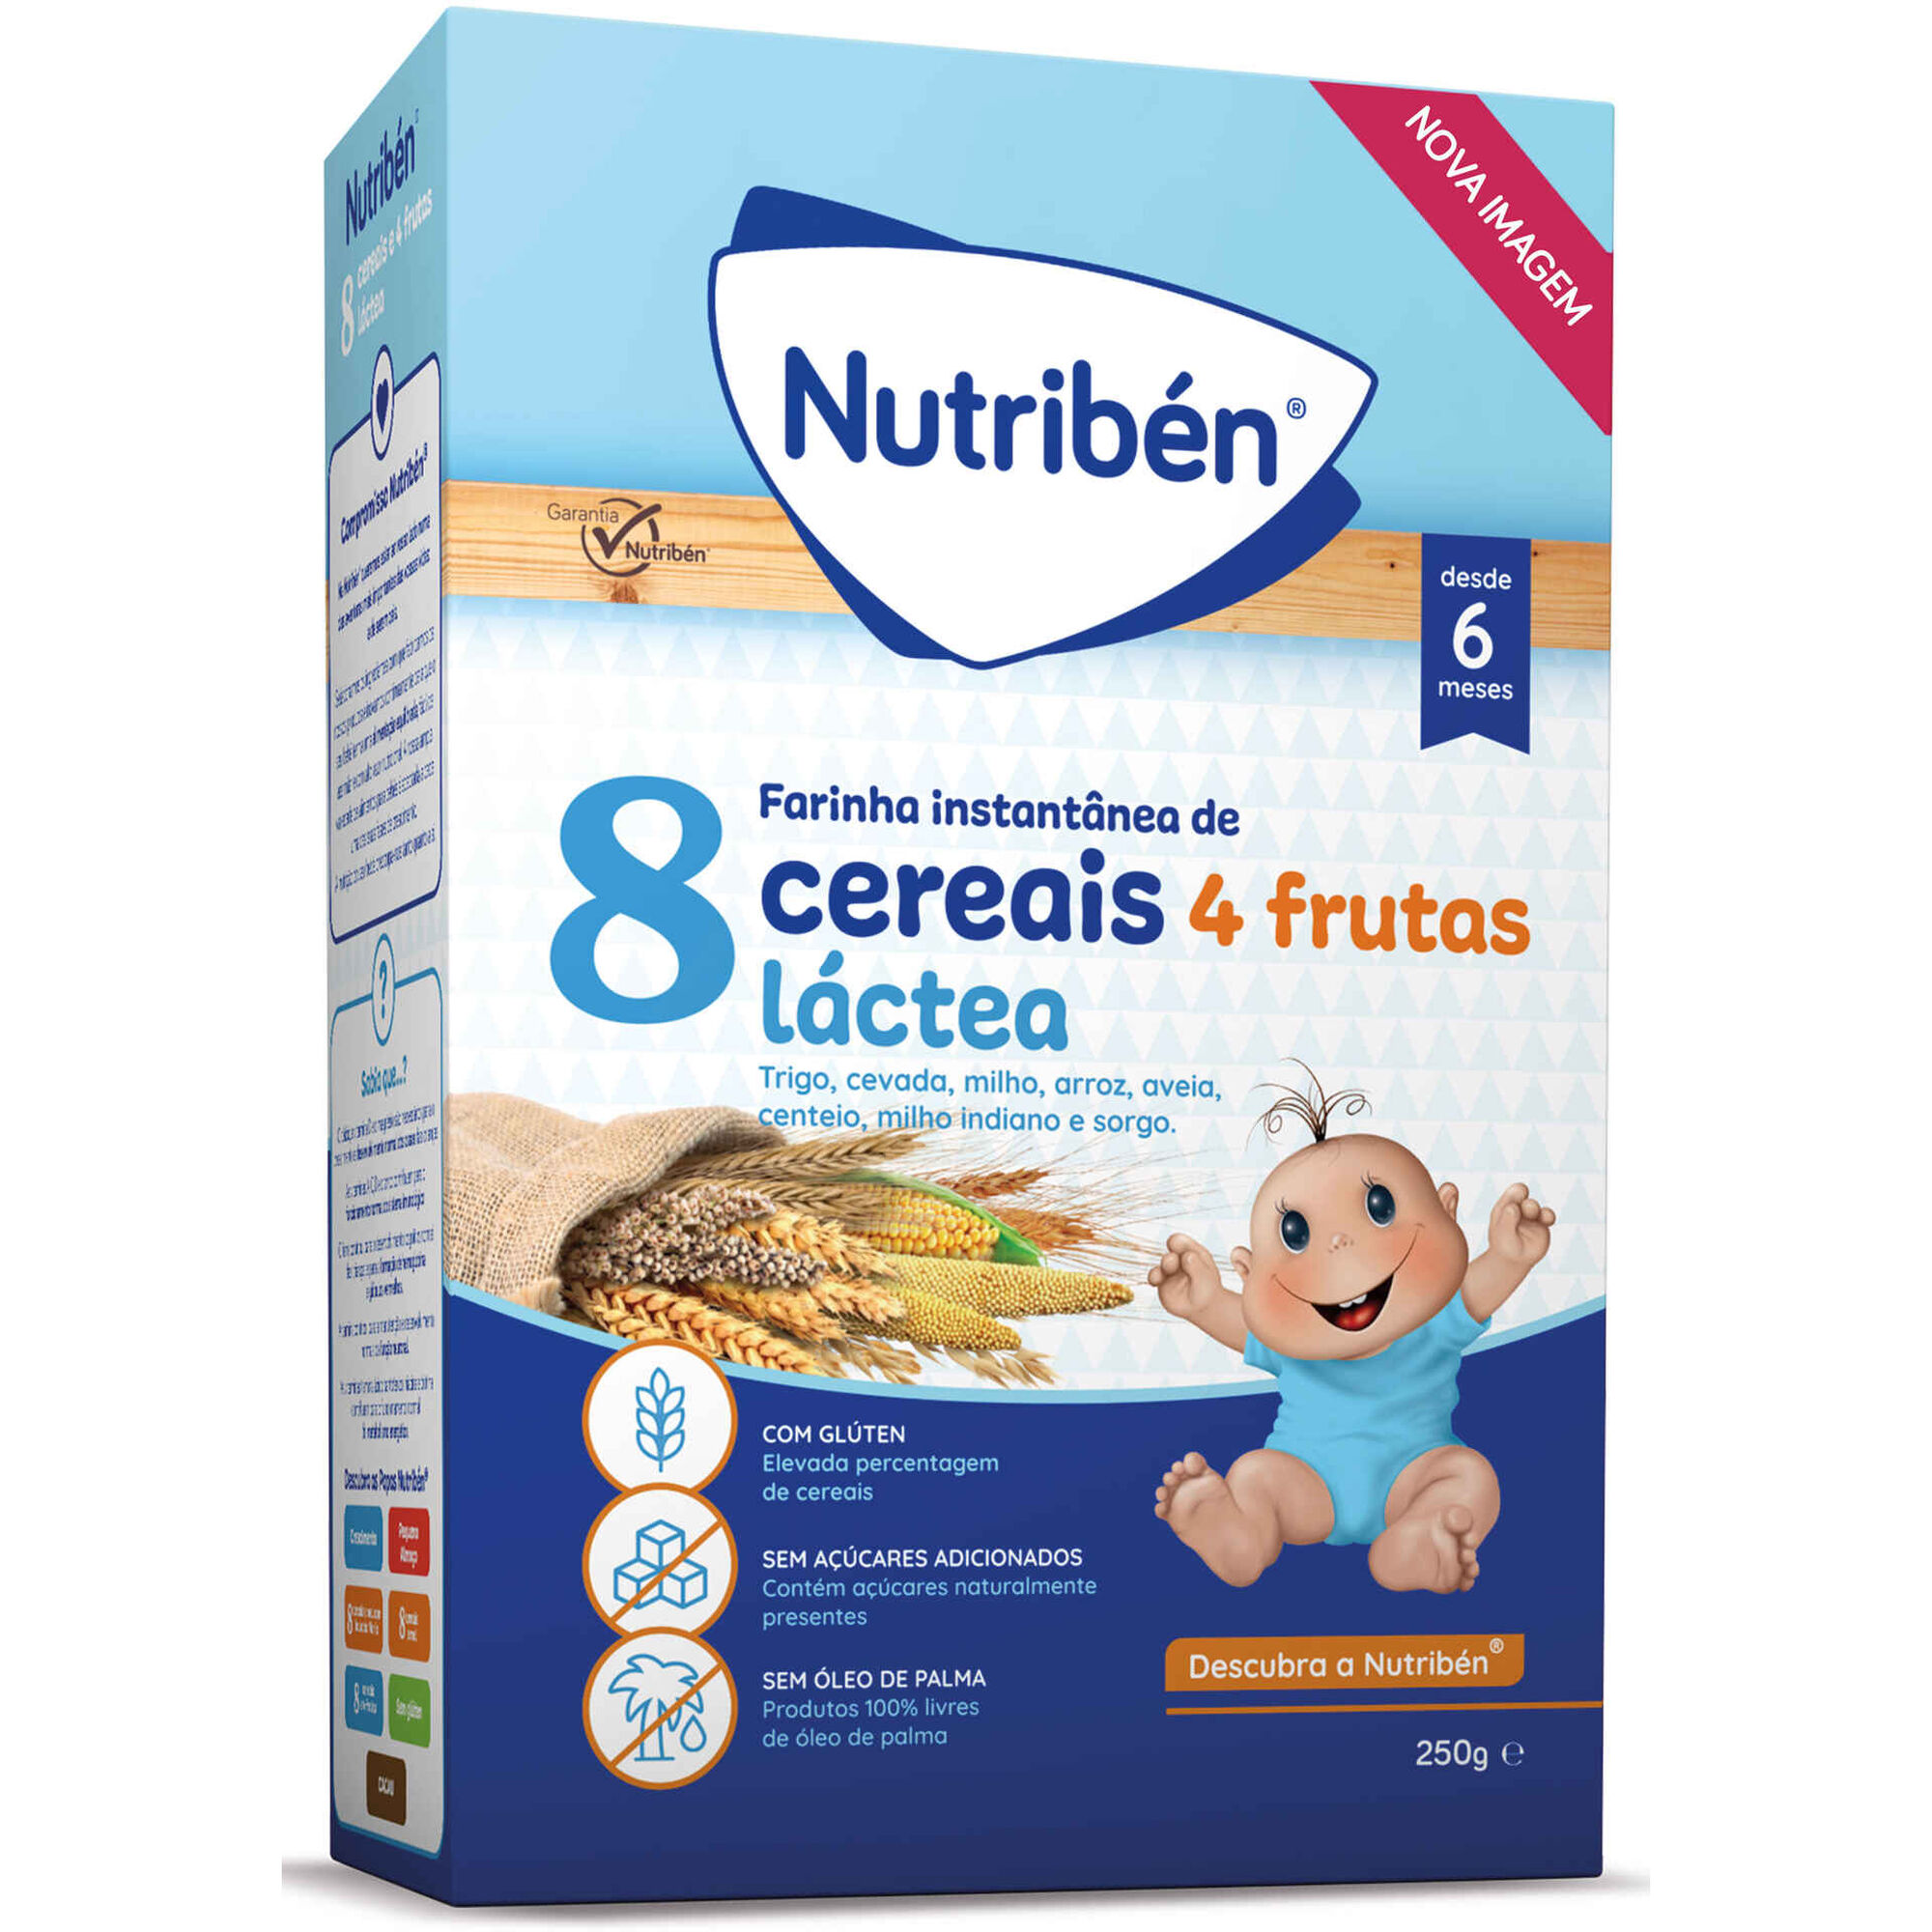 Papa Infantil Farinha Láctea Cereais e Bolacha +6M - emb. 2 x 250 ml -  Continente do Bebé